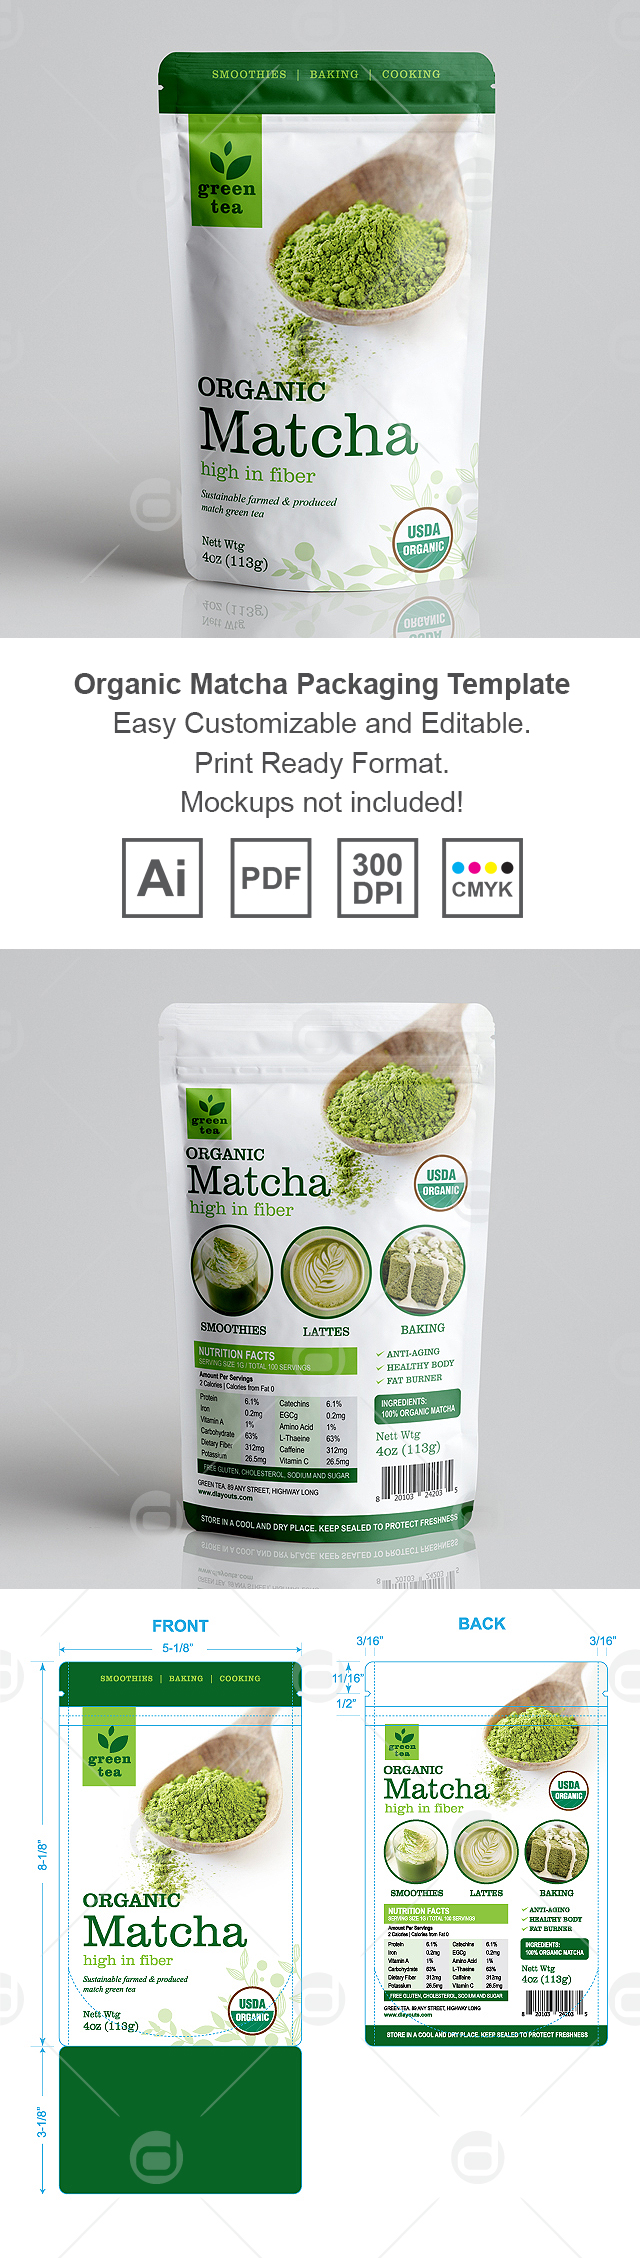 Organic Matcha Green Tea Packaging Template